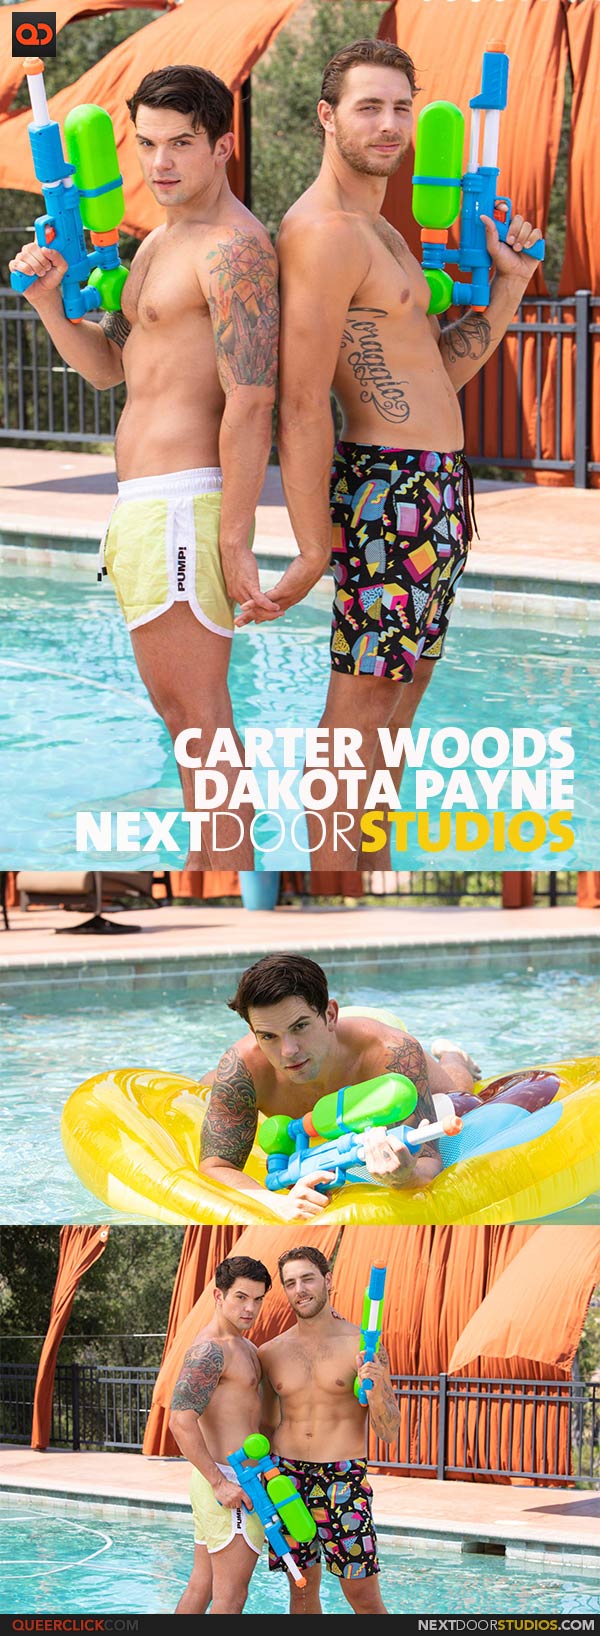 NextDoorStudios: Dakota Payne and Carter Woods